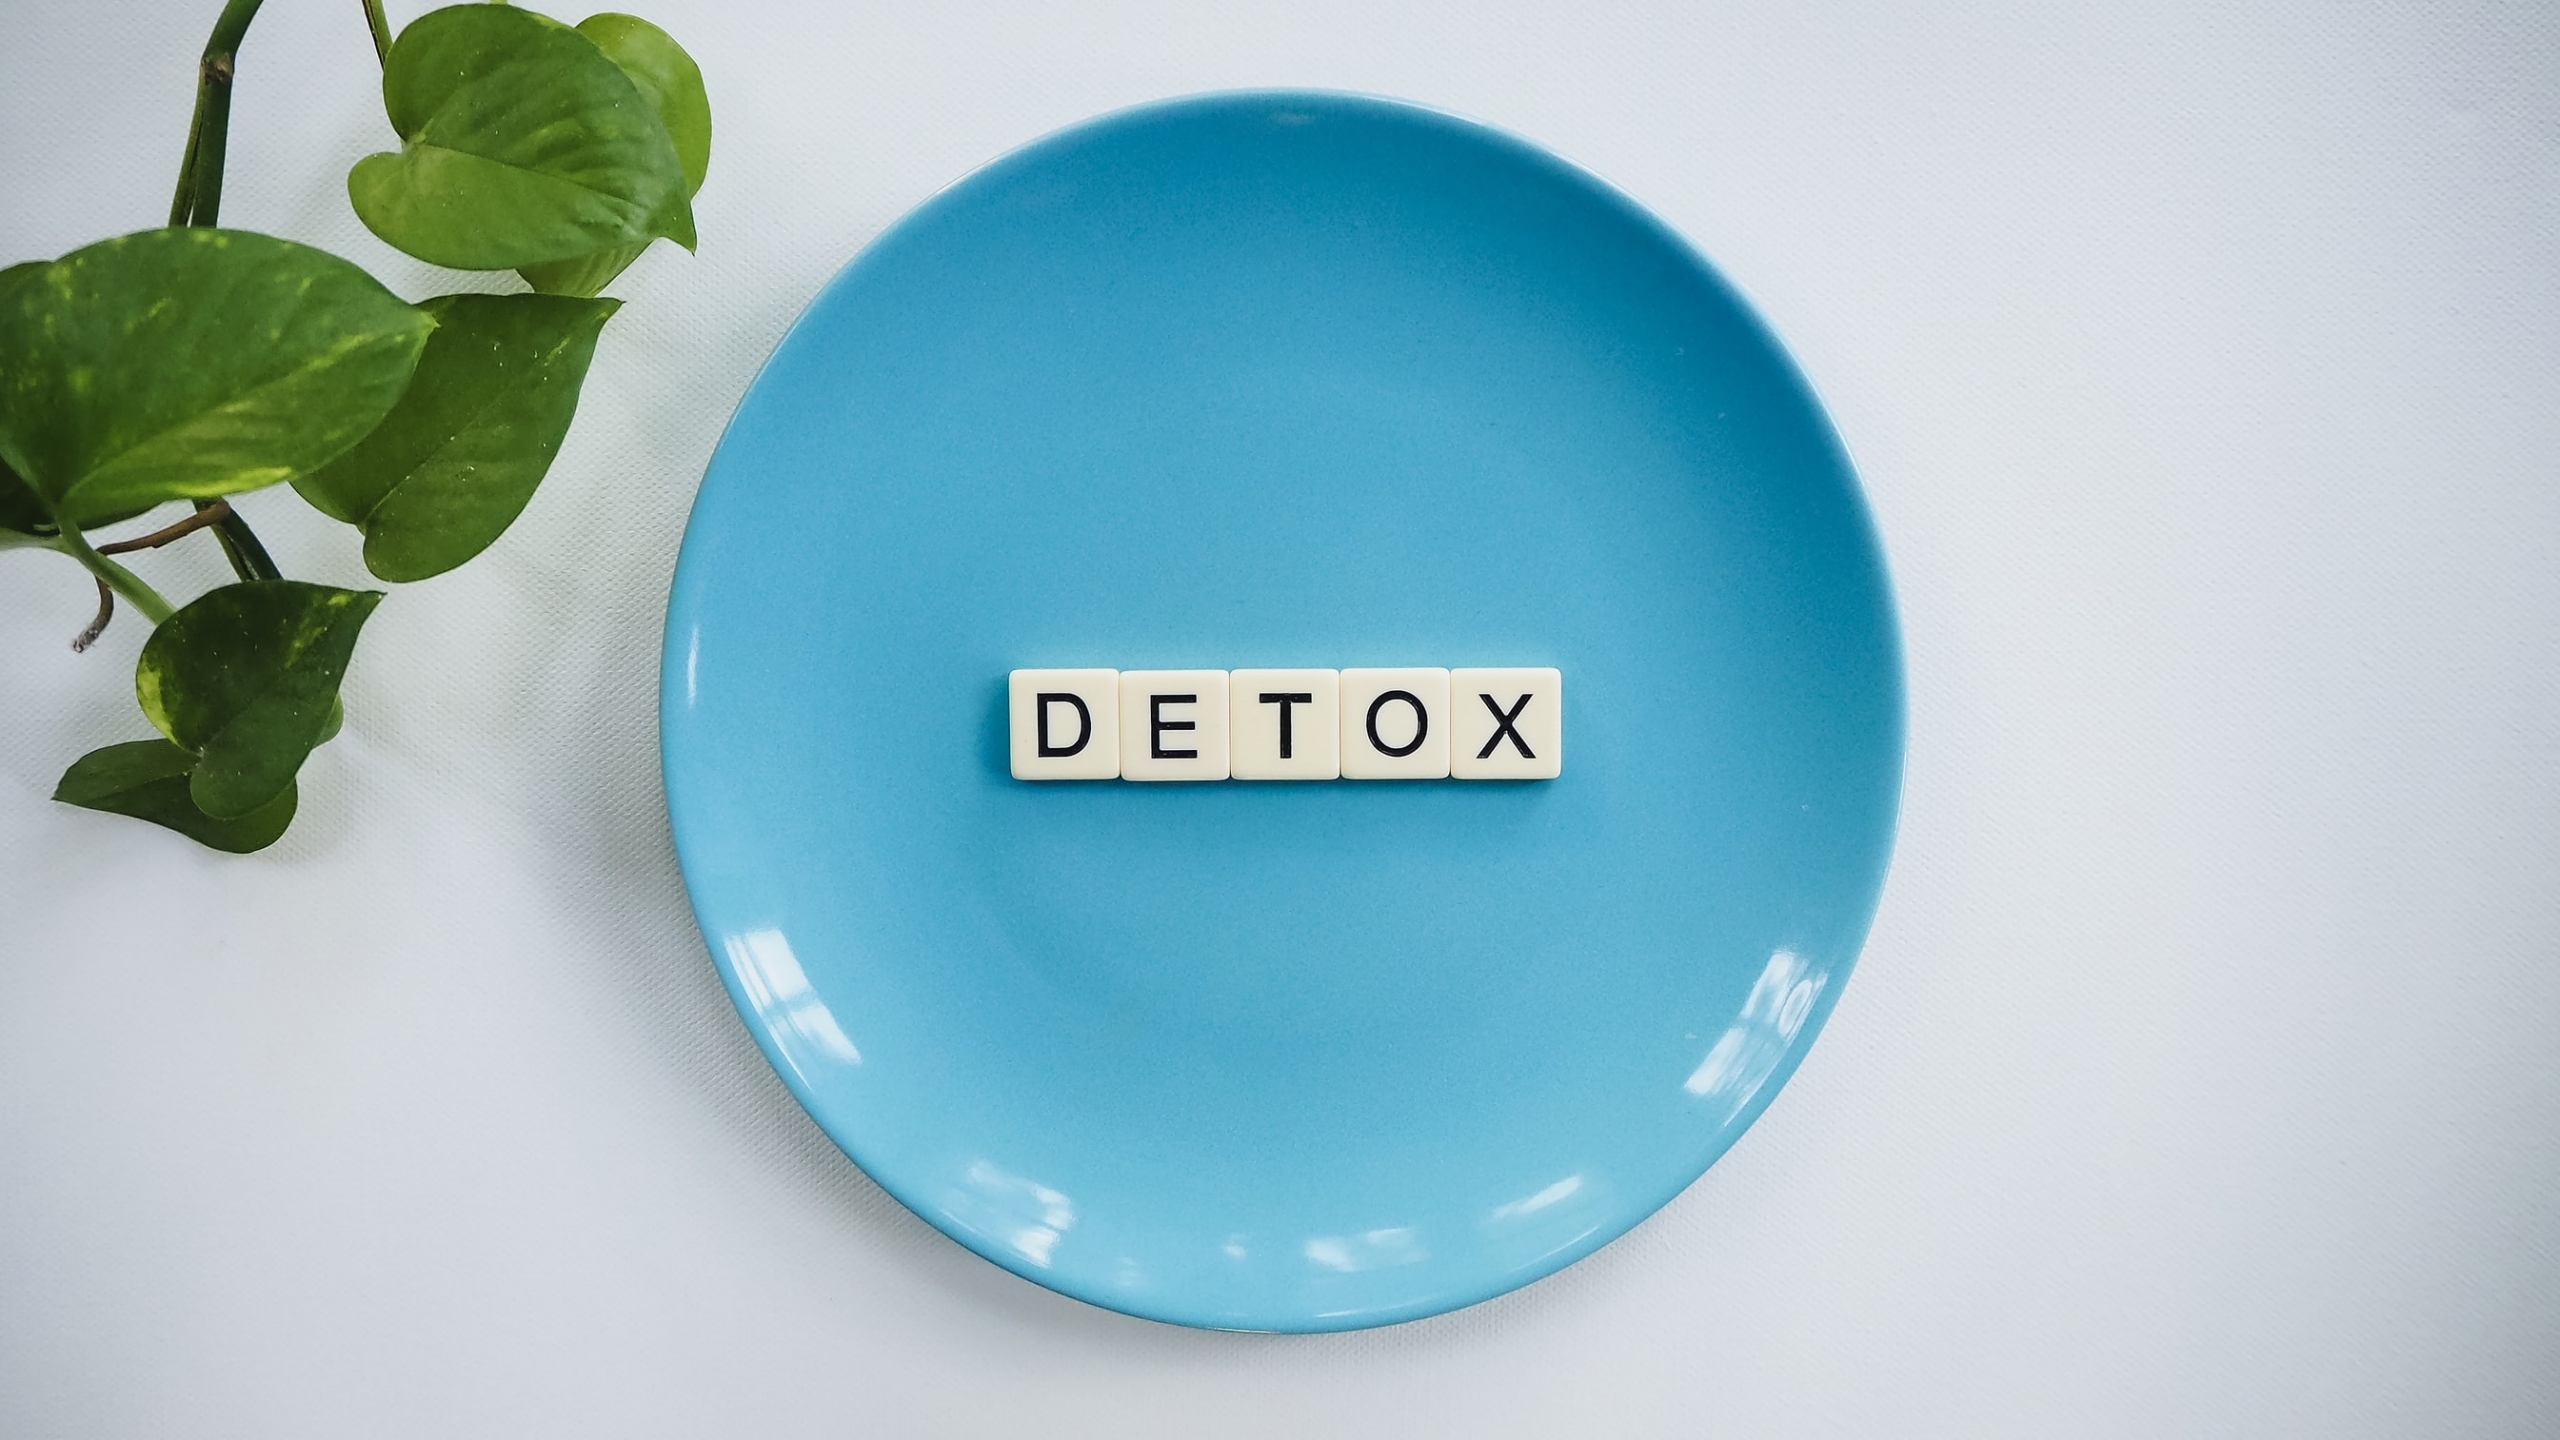 Detox | 21 Day Full Body Cleanse